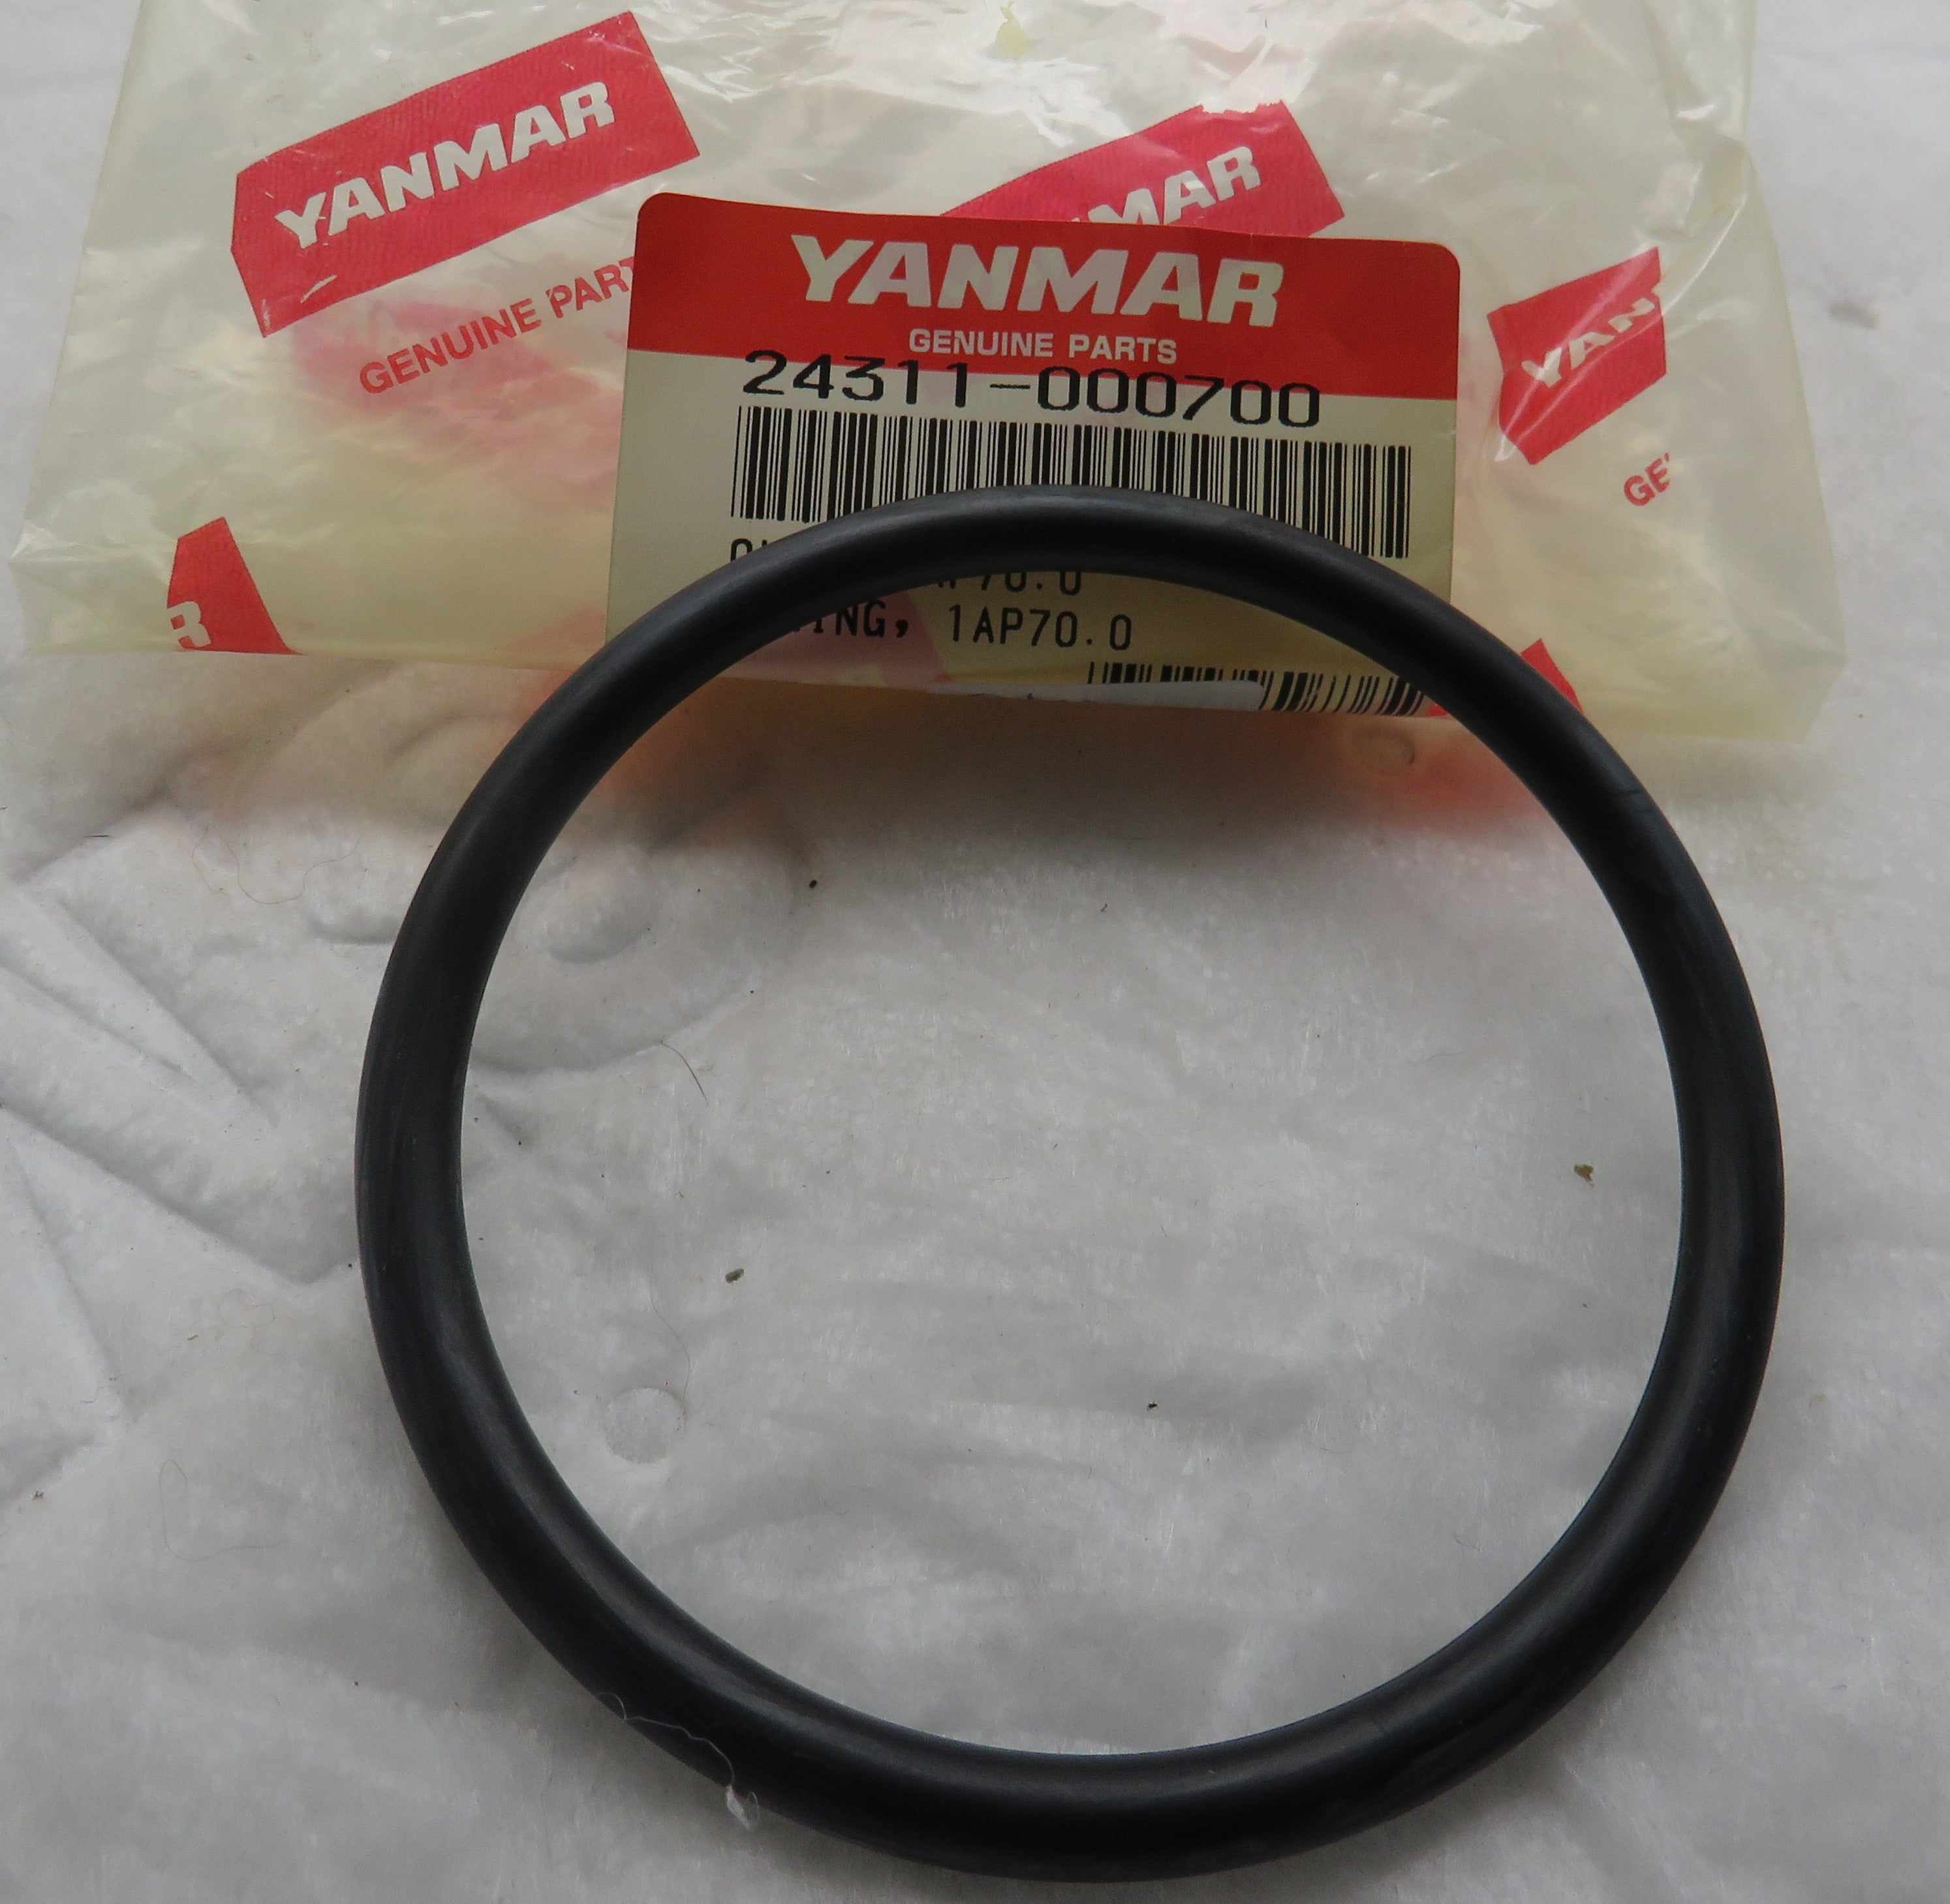 Yanmar 24311-000700 Seal O-Ring Gaskets